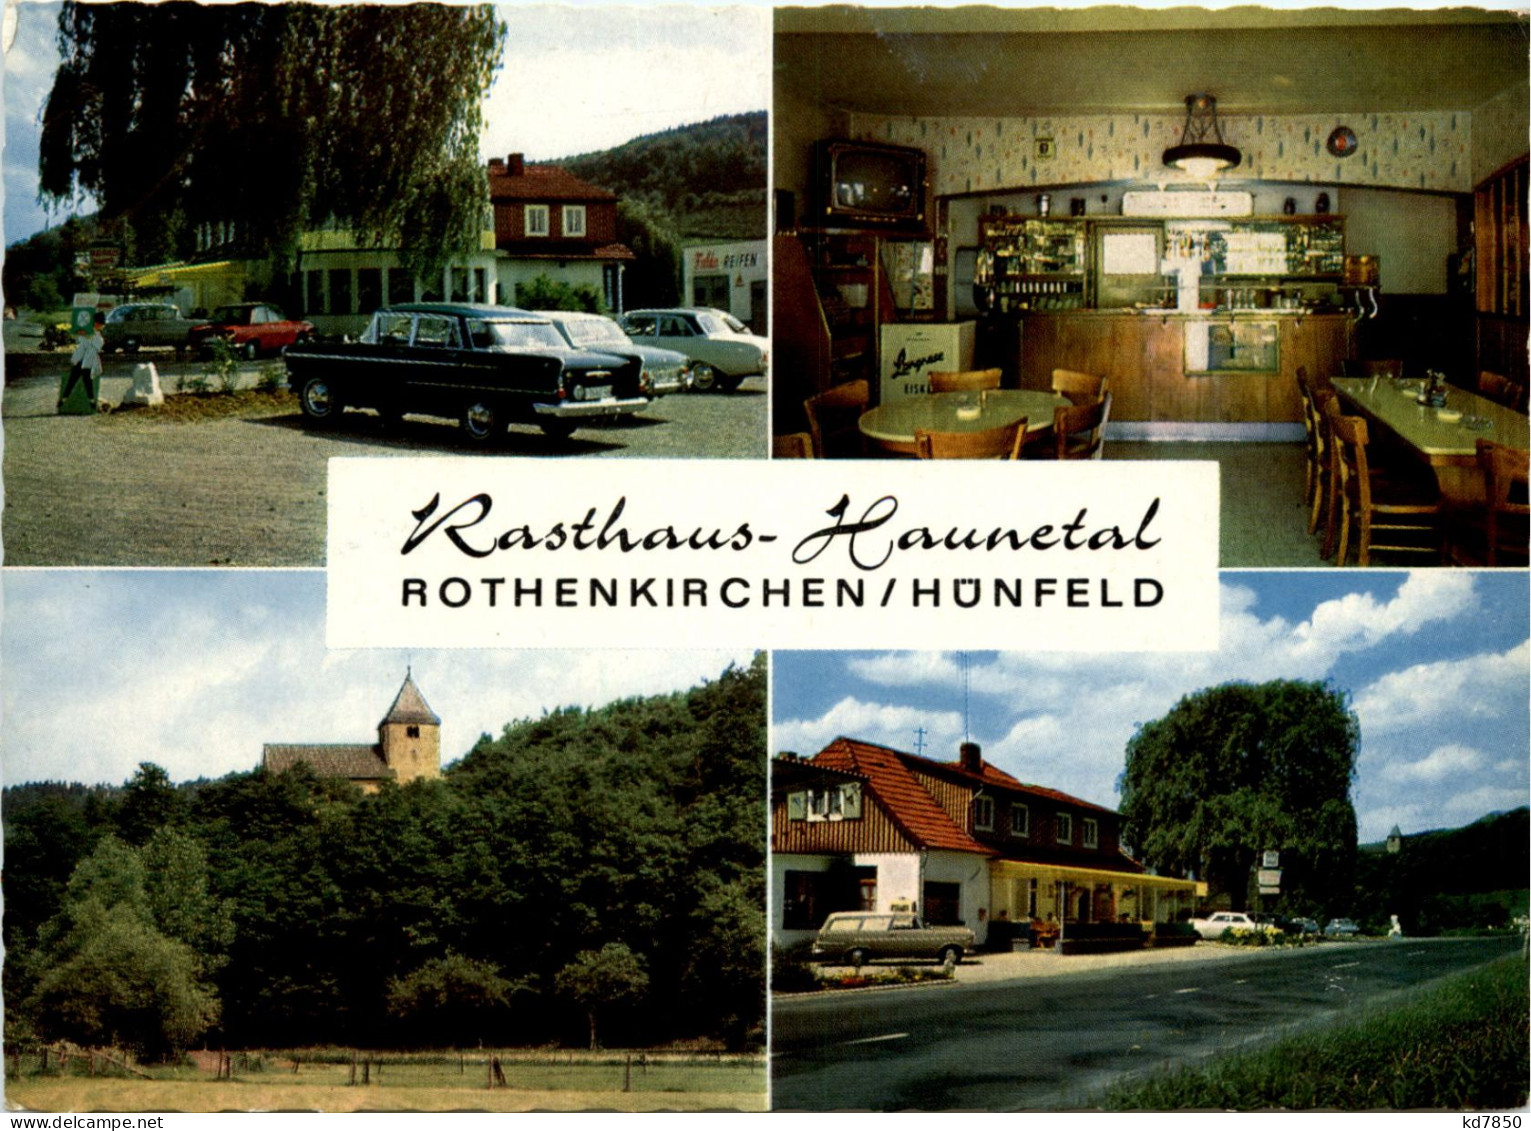 Rasthaus Haunetal, Rothenkirchen - Fulda